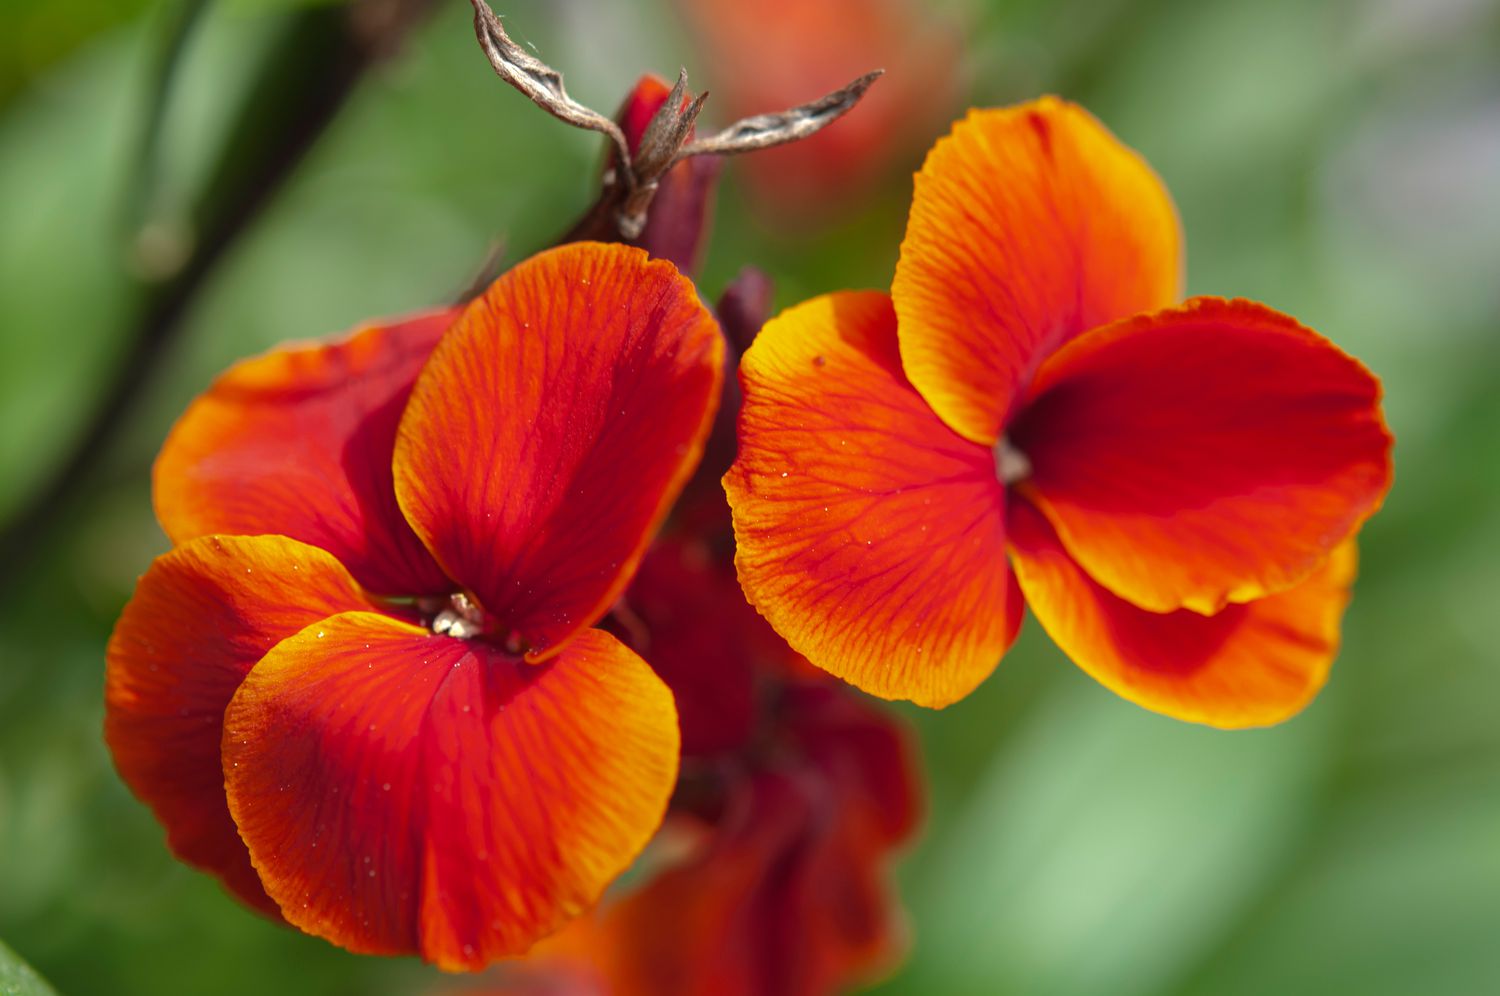 Planta Fire king wallflower com flores vermelho-alaranjadas em close-up